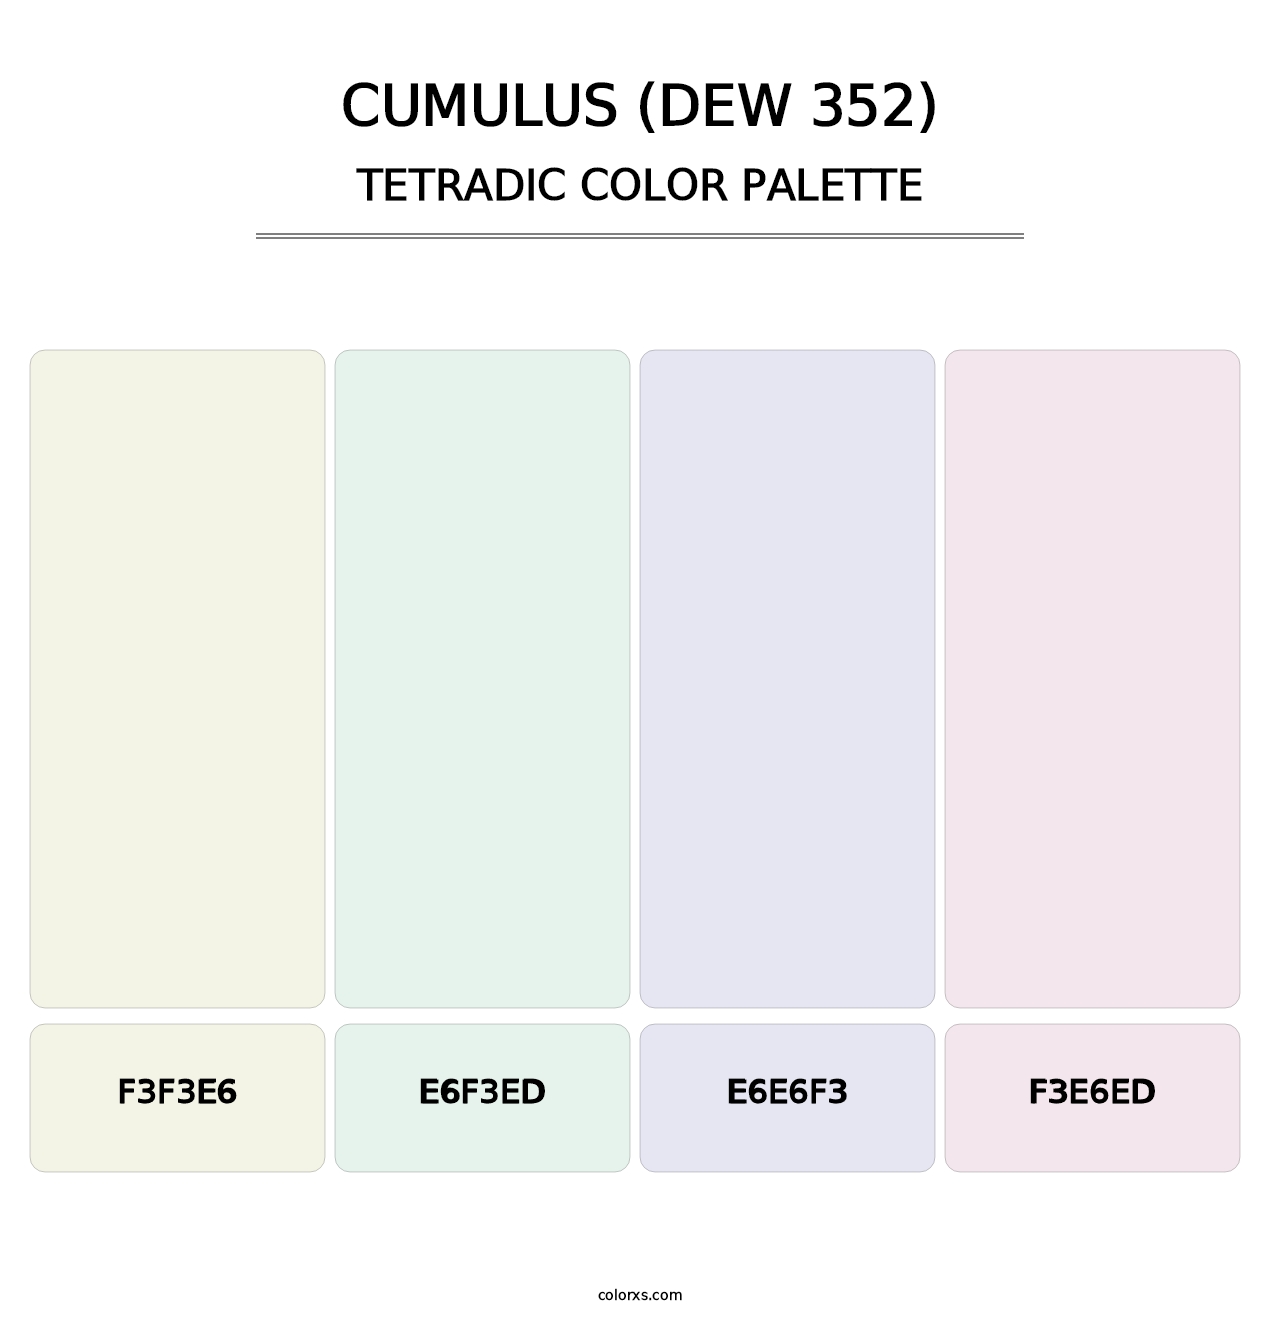 Cumulus (DEW 352) - Tetradic Color Palette